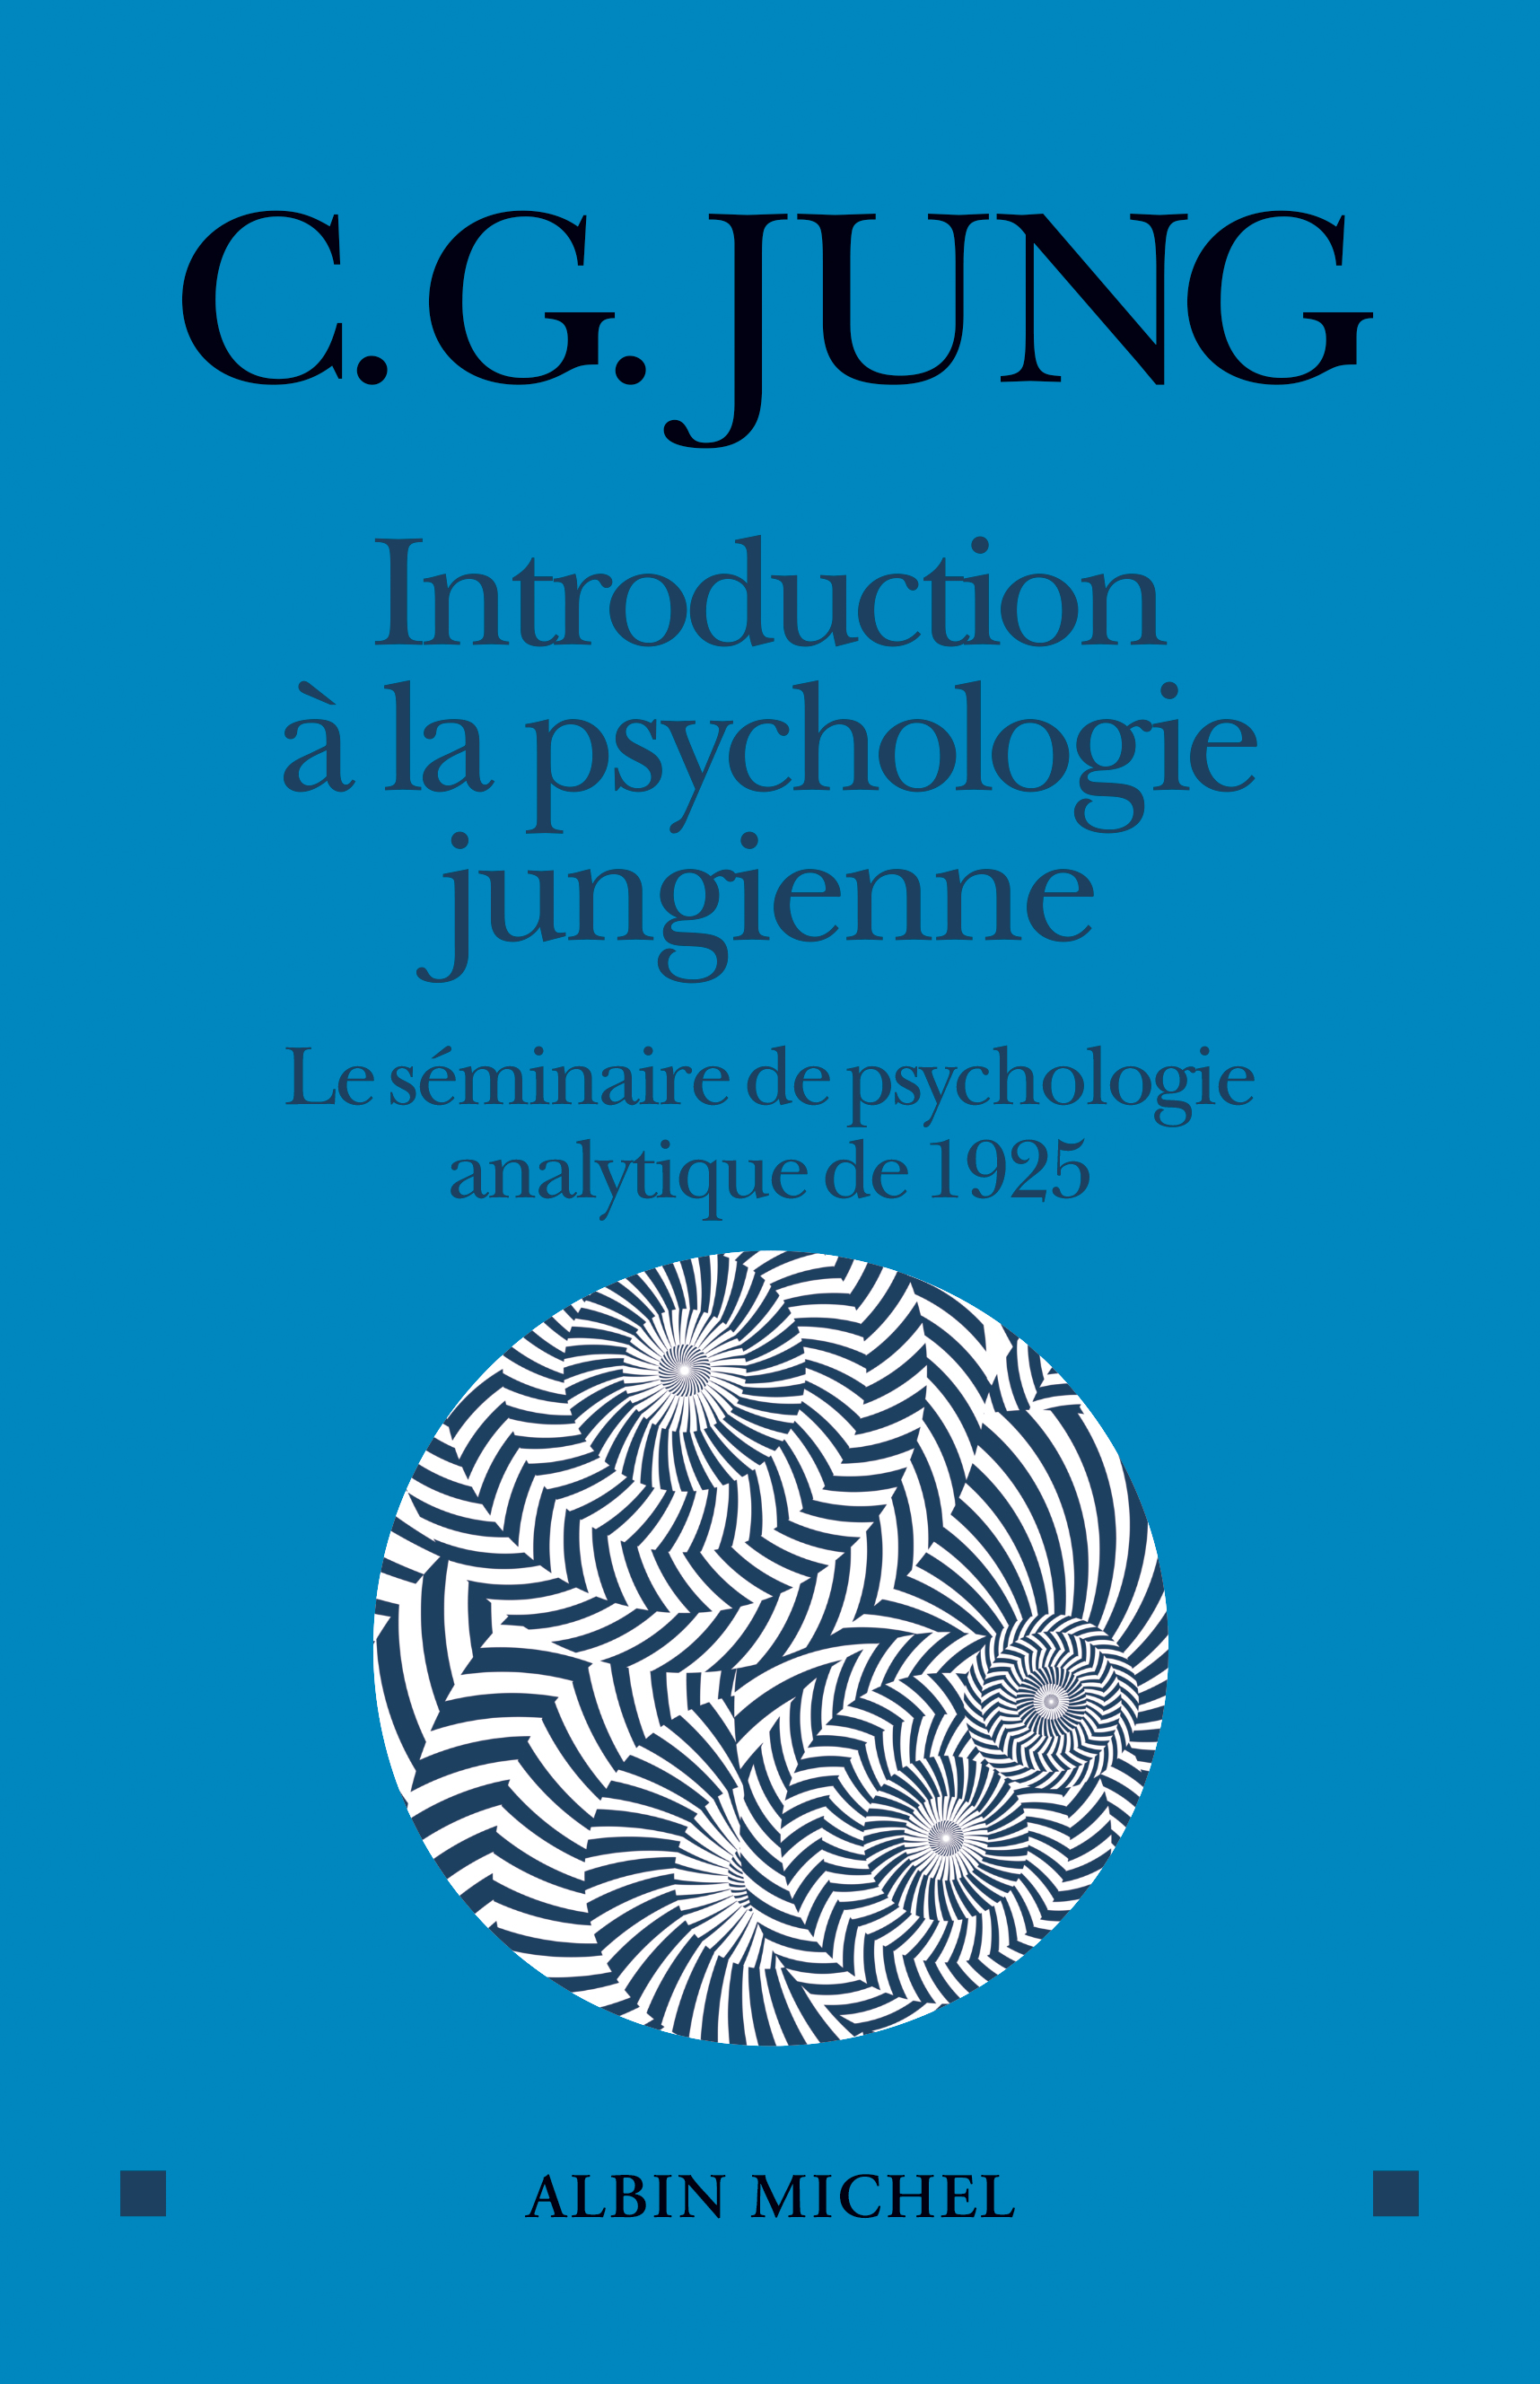 Couverture du livre Introduction à la psychologie jungienne